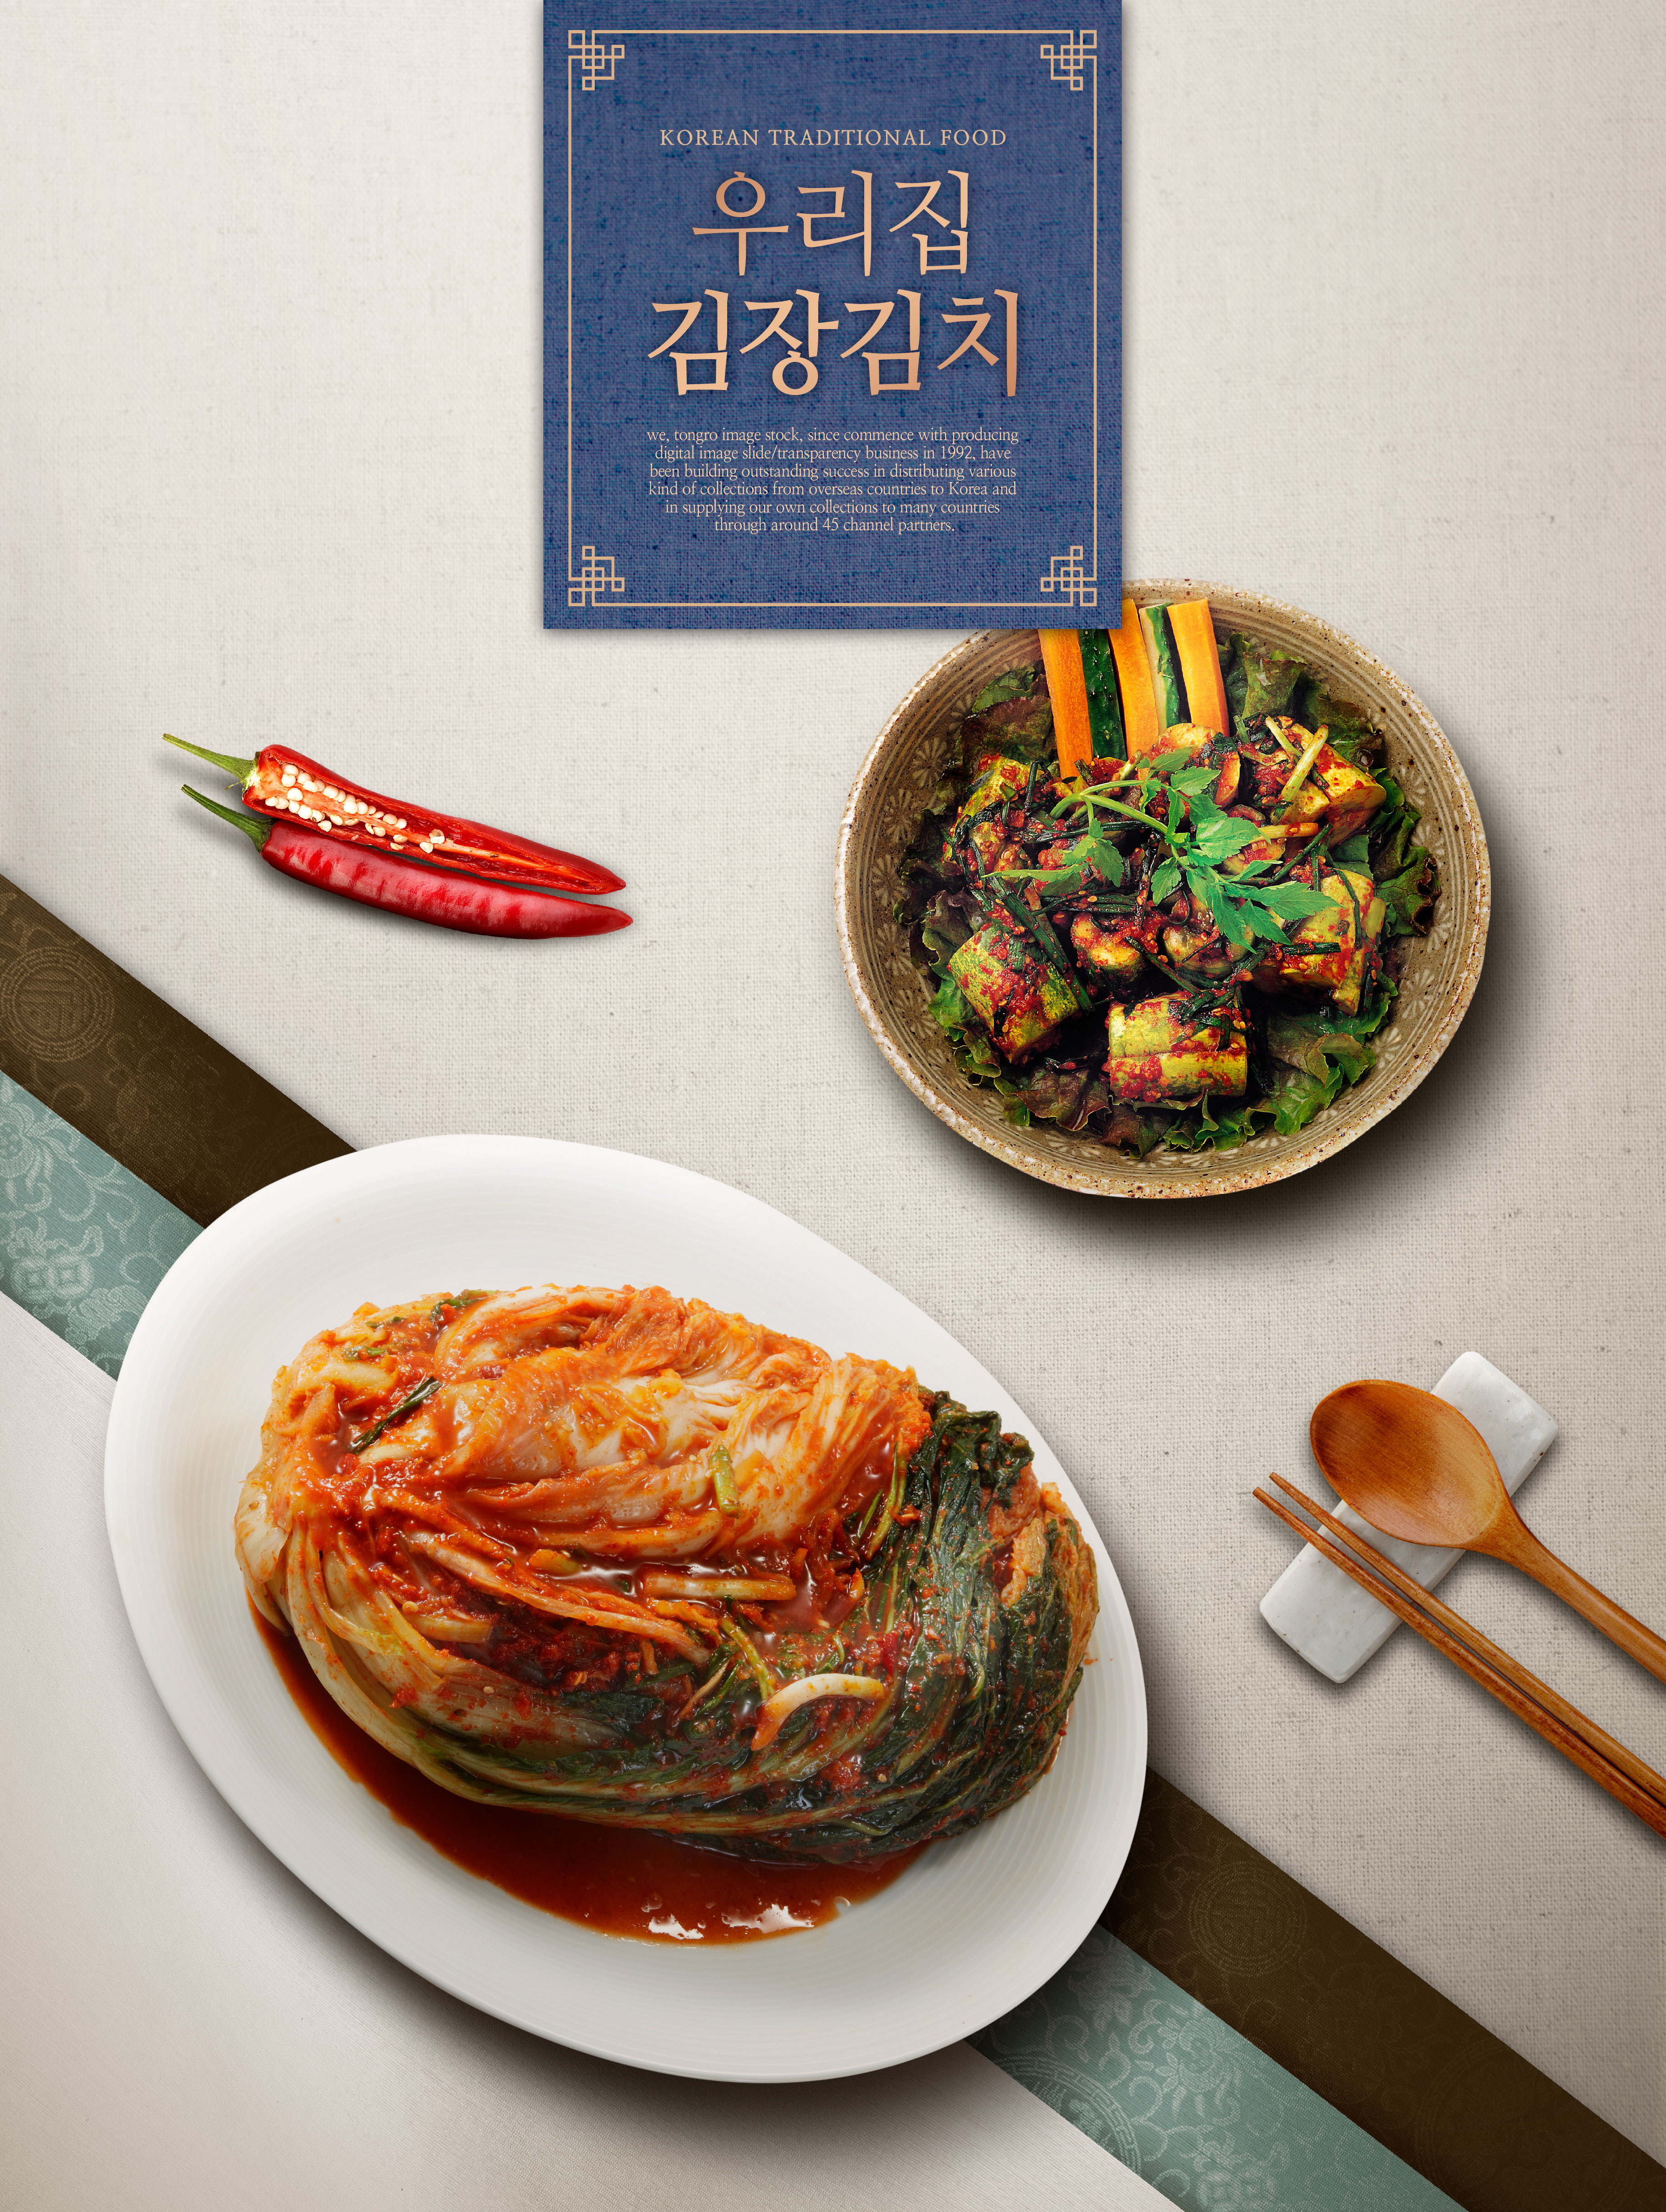 韩国传统特色食品泡菜广告海报psd模板插图(3)